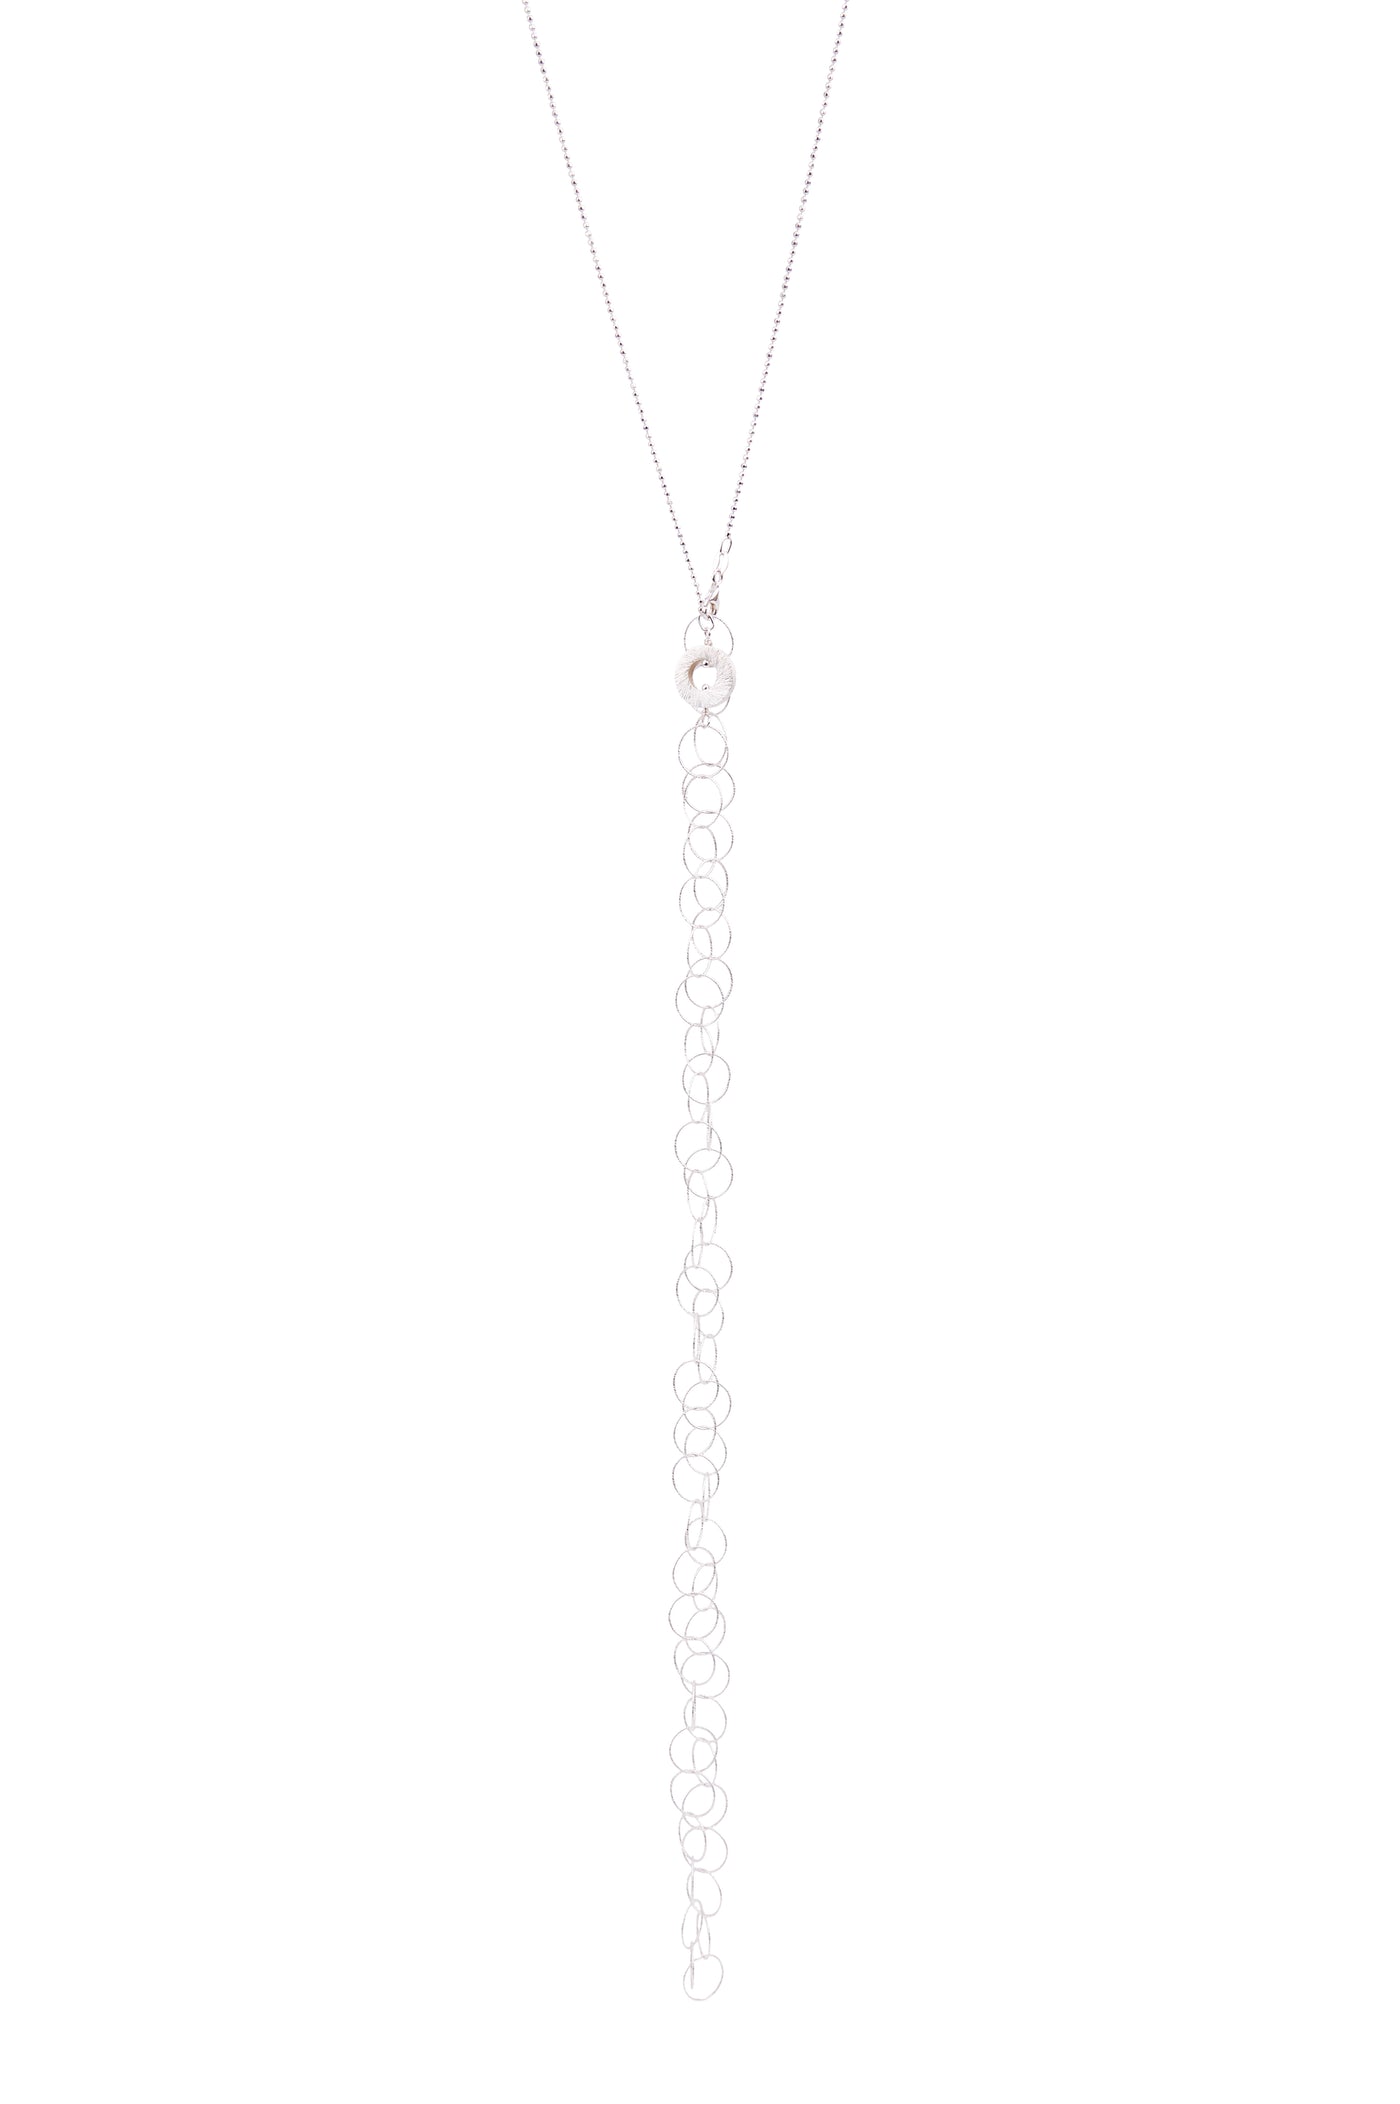 Sliver necklace " LINE"